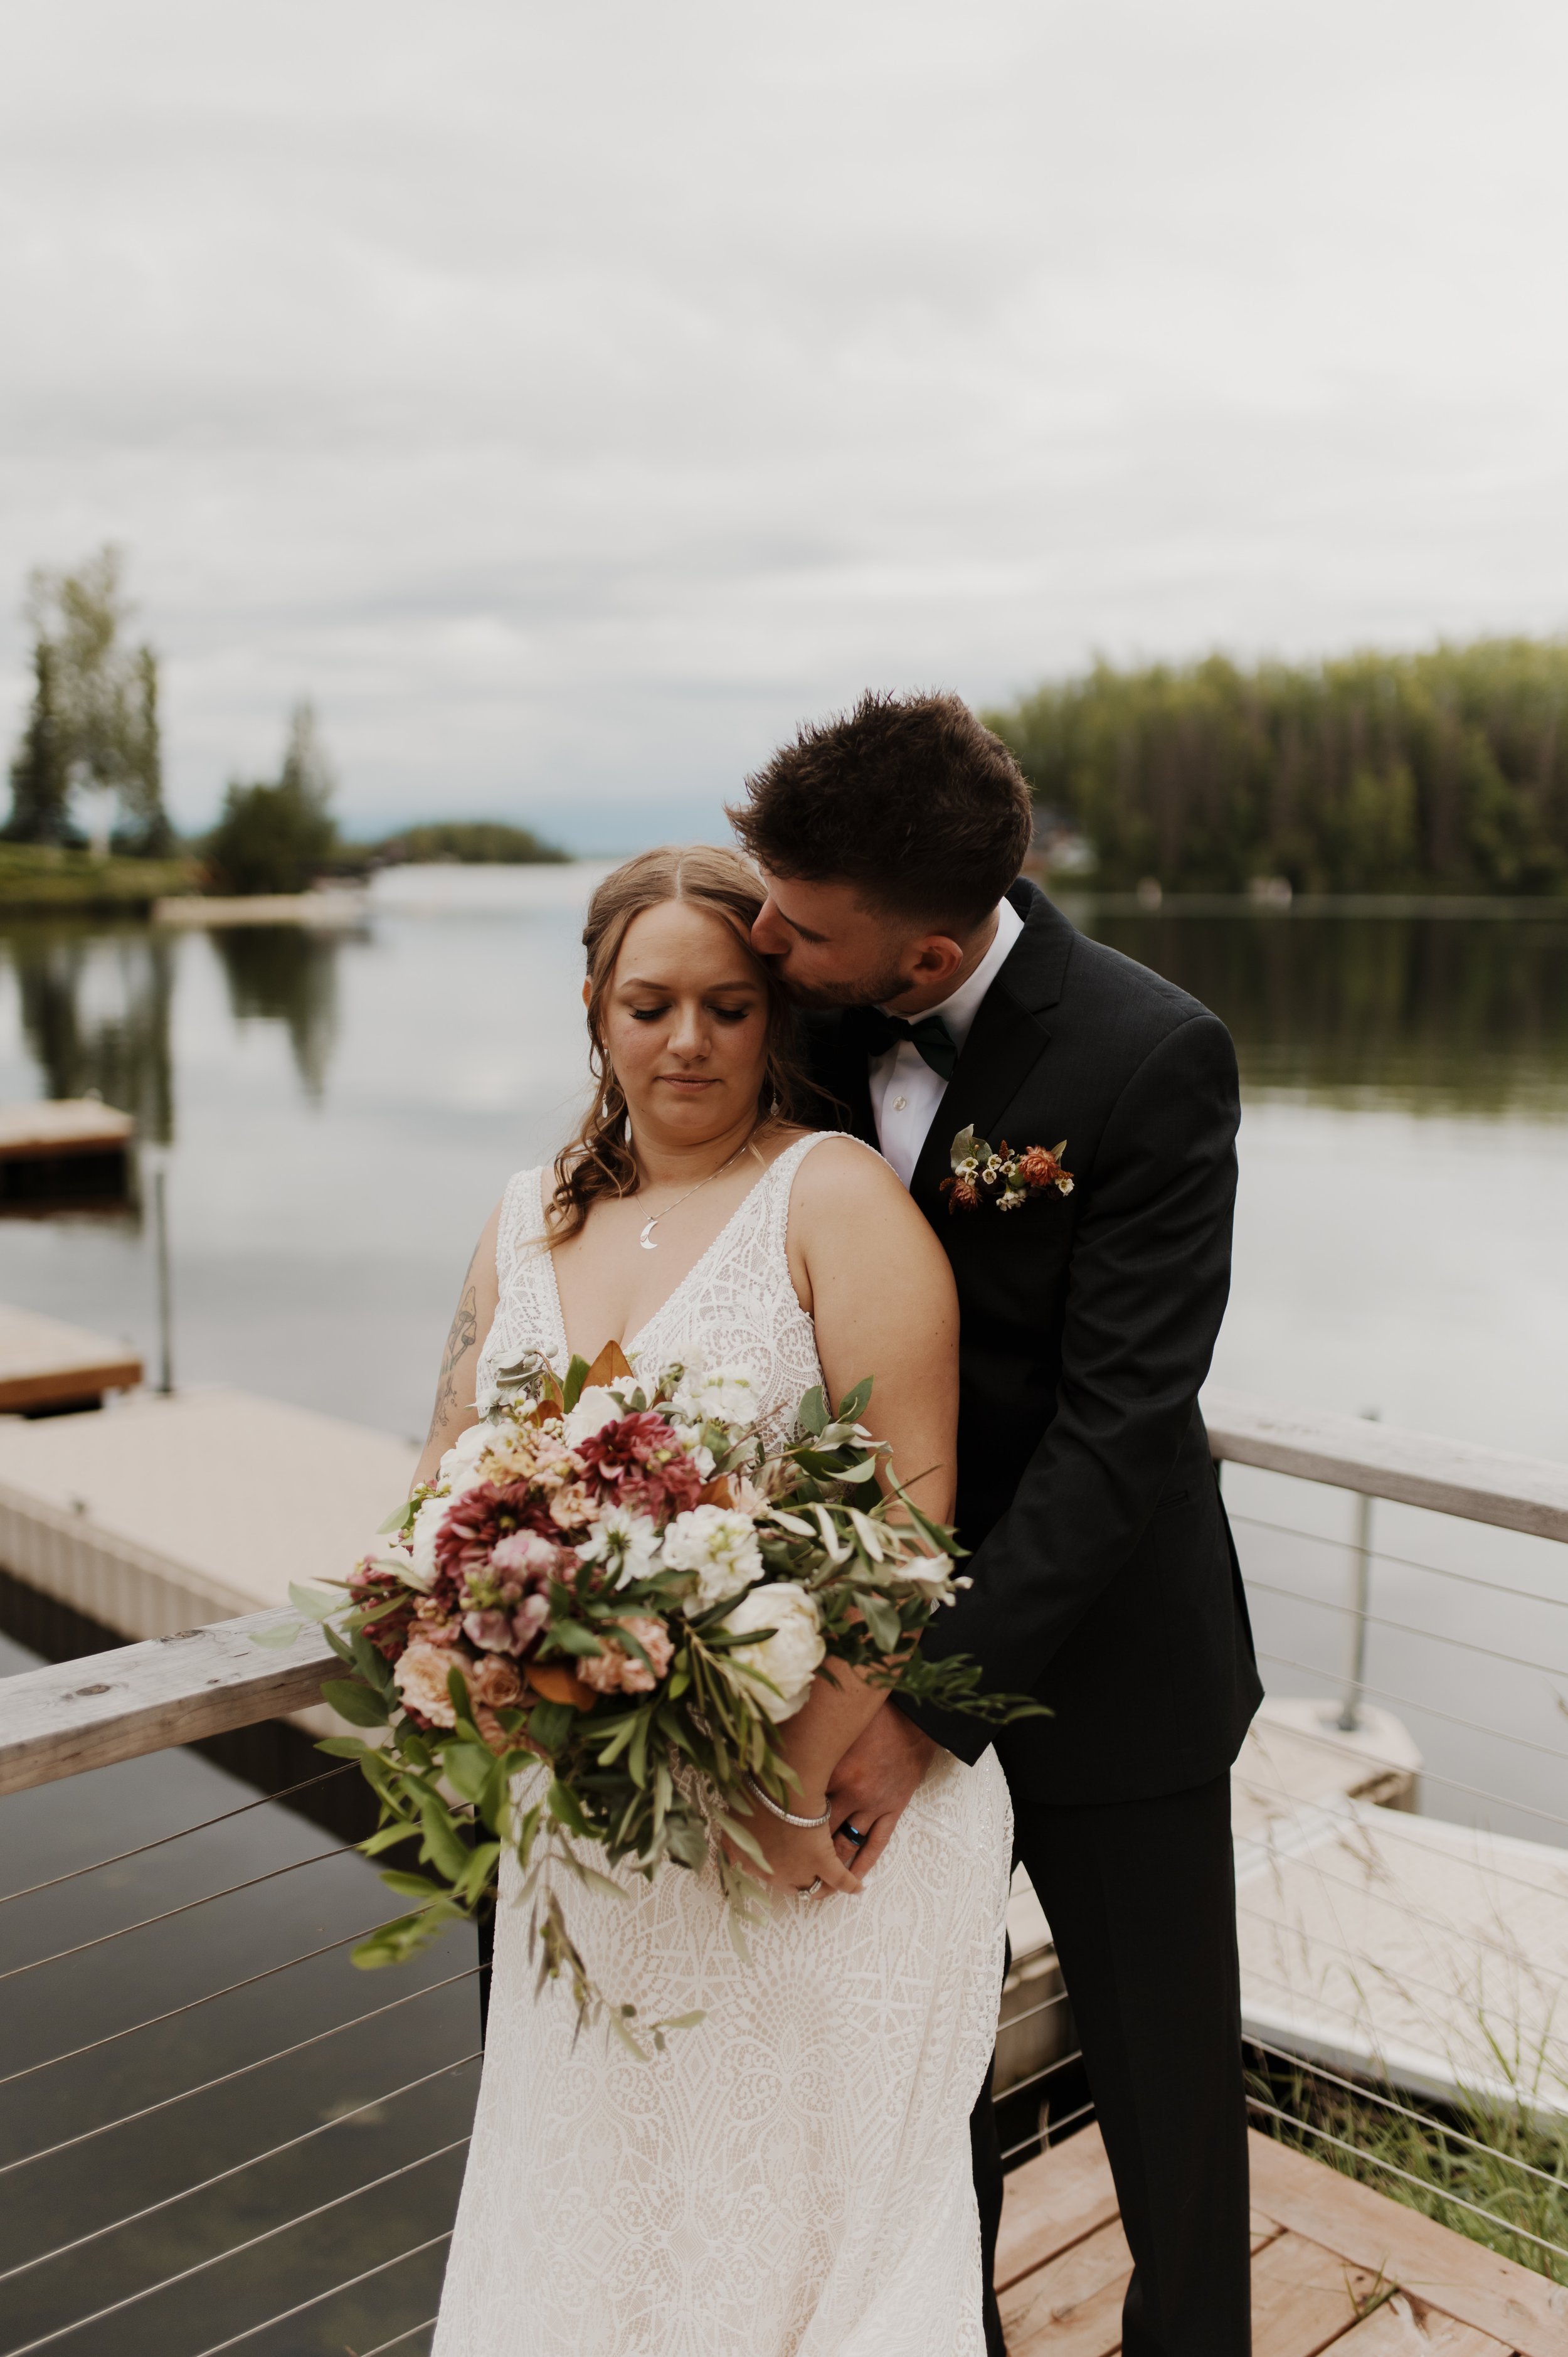 Dreamy Forest Wedding in Wasilla Alaska